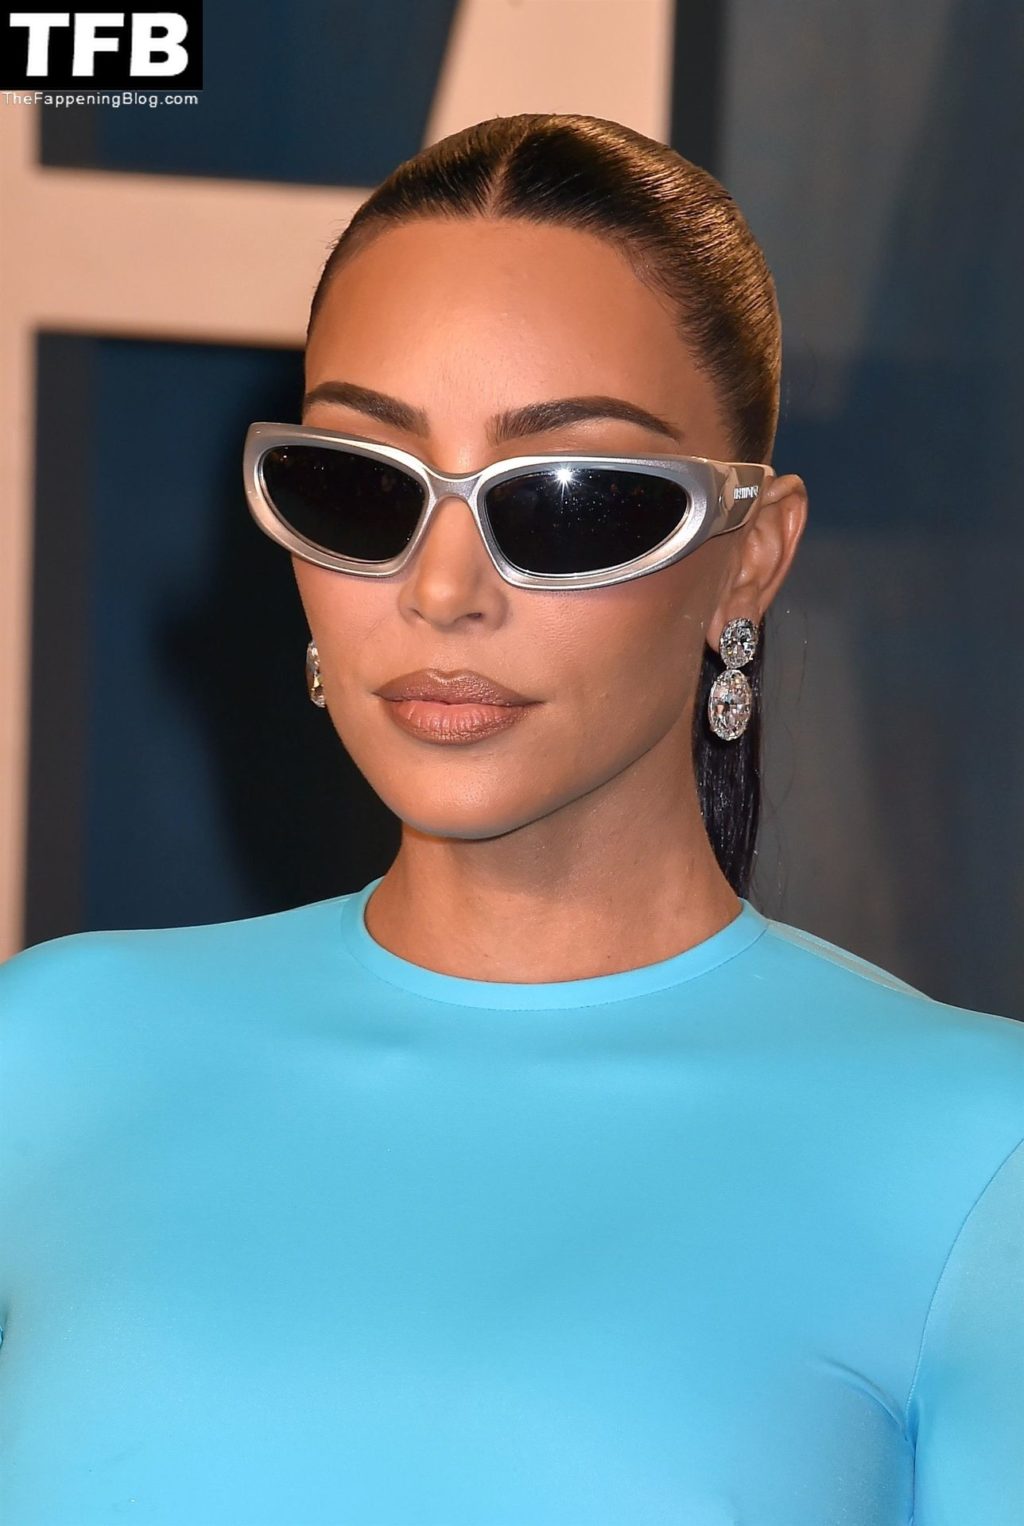 Kim Kardashian Shows Off Her Curves at the 2022 Vanity Fair Oscar Party (29 Photos)